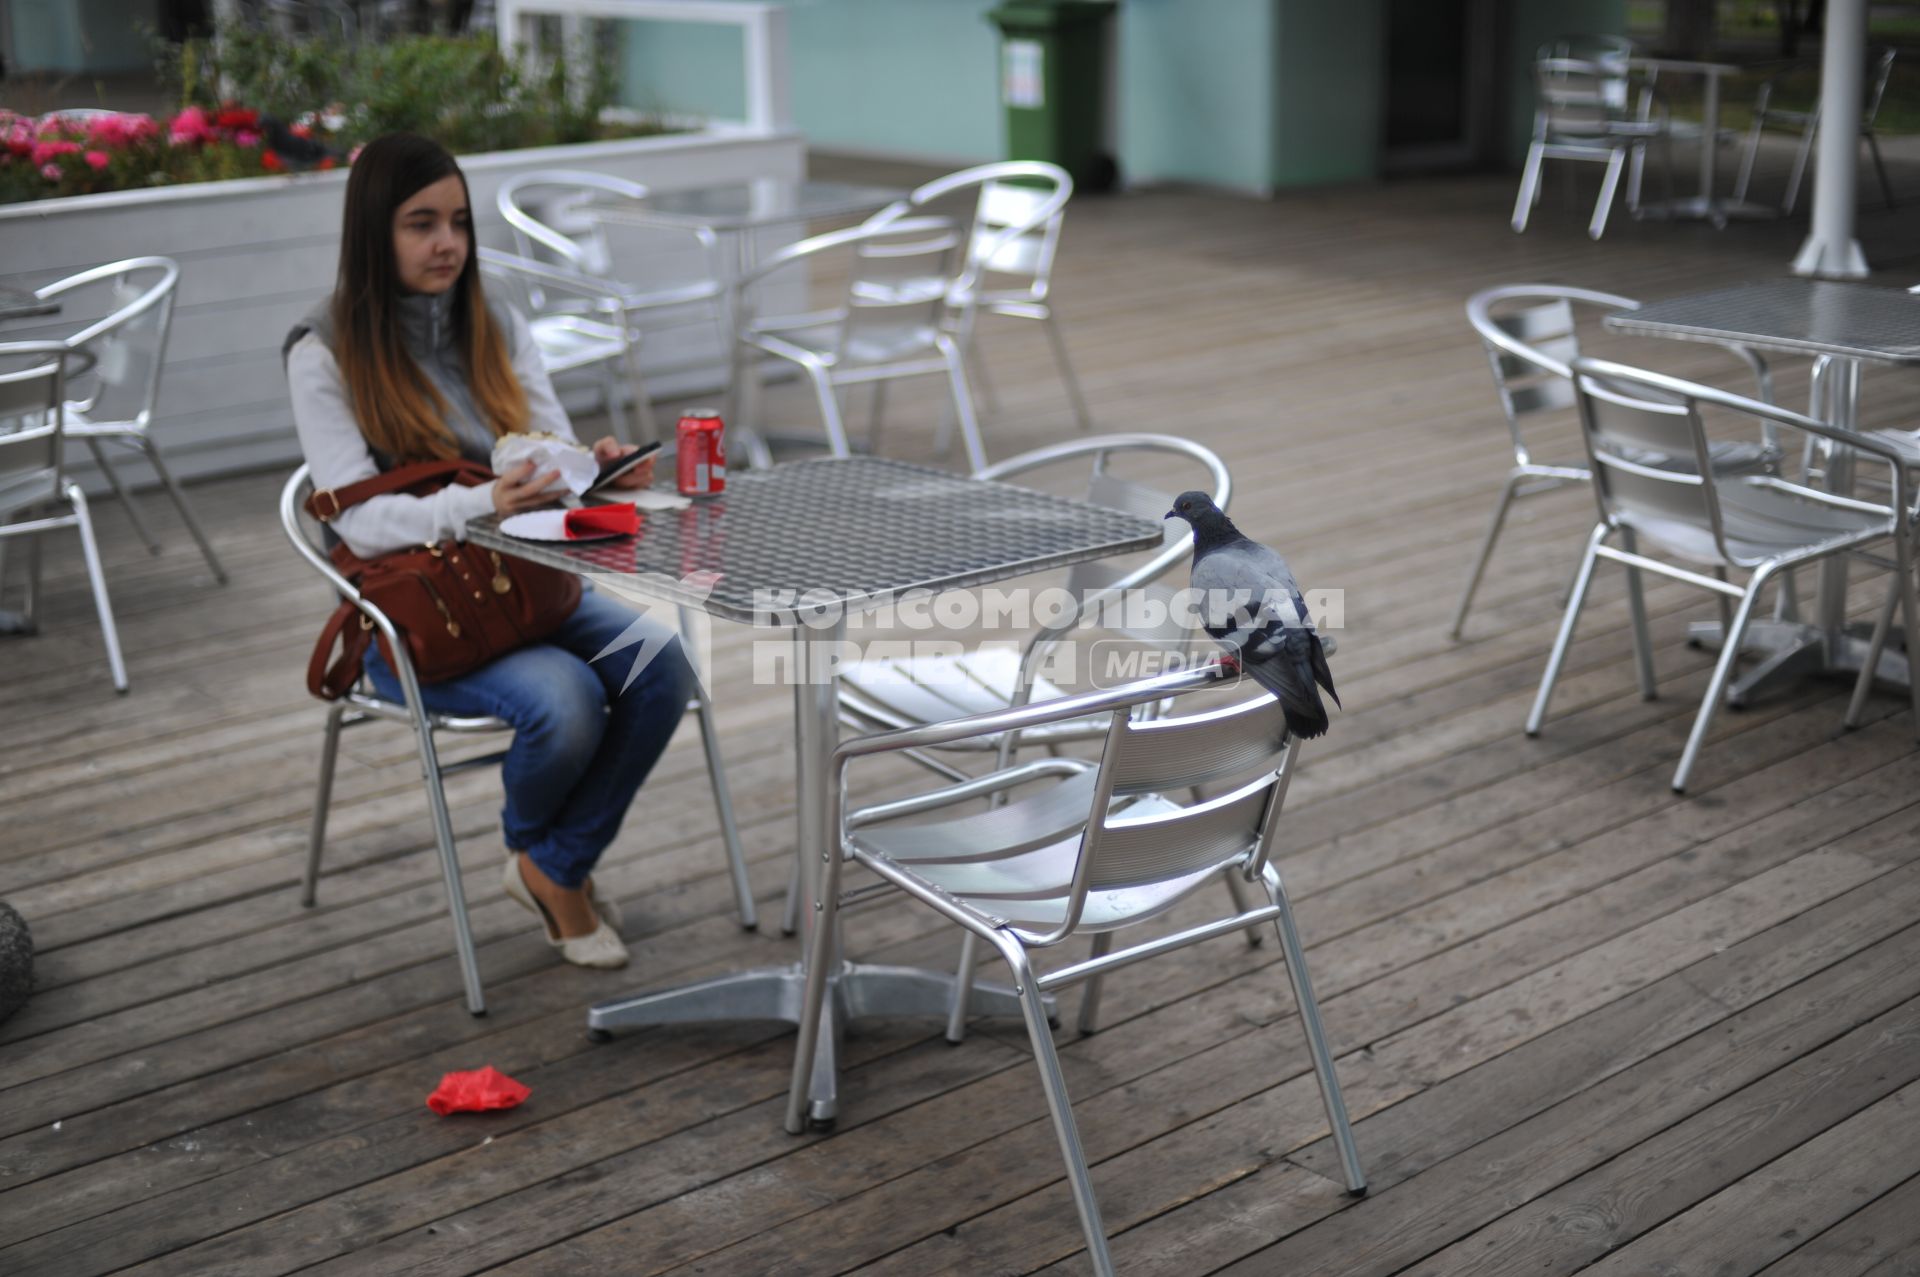 Москва. Голубь смотрит на девушку, которая  сидит  за столиками в летнем кафе  на ВДНХ.